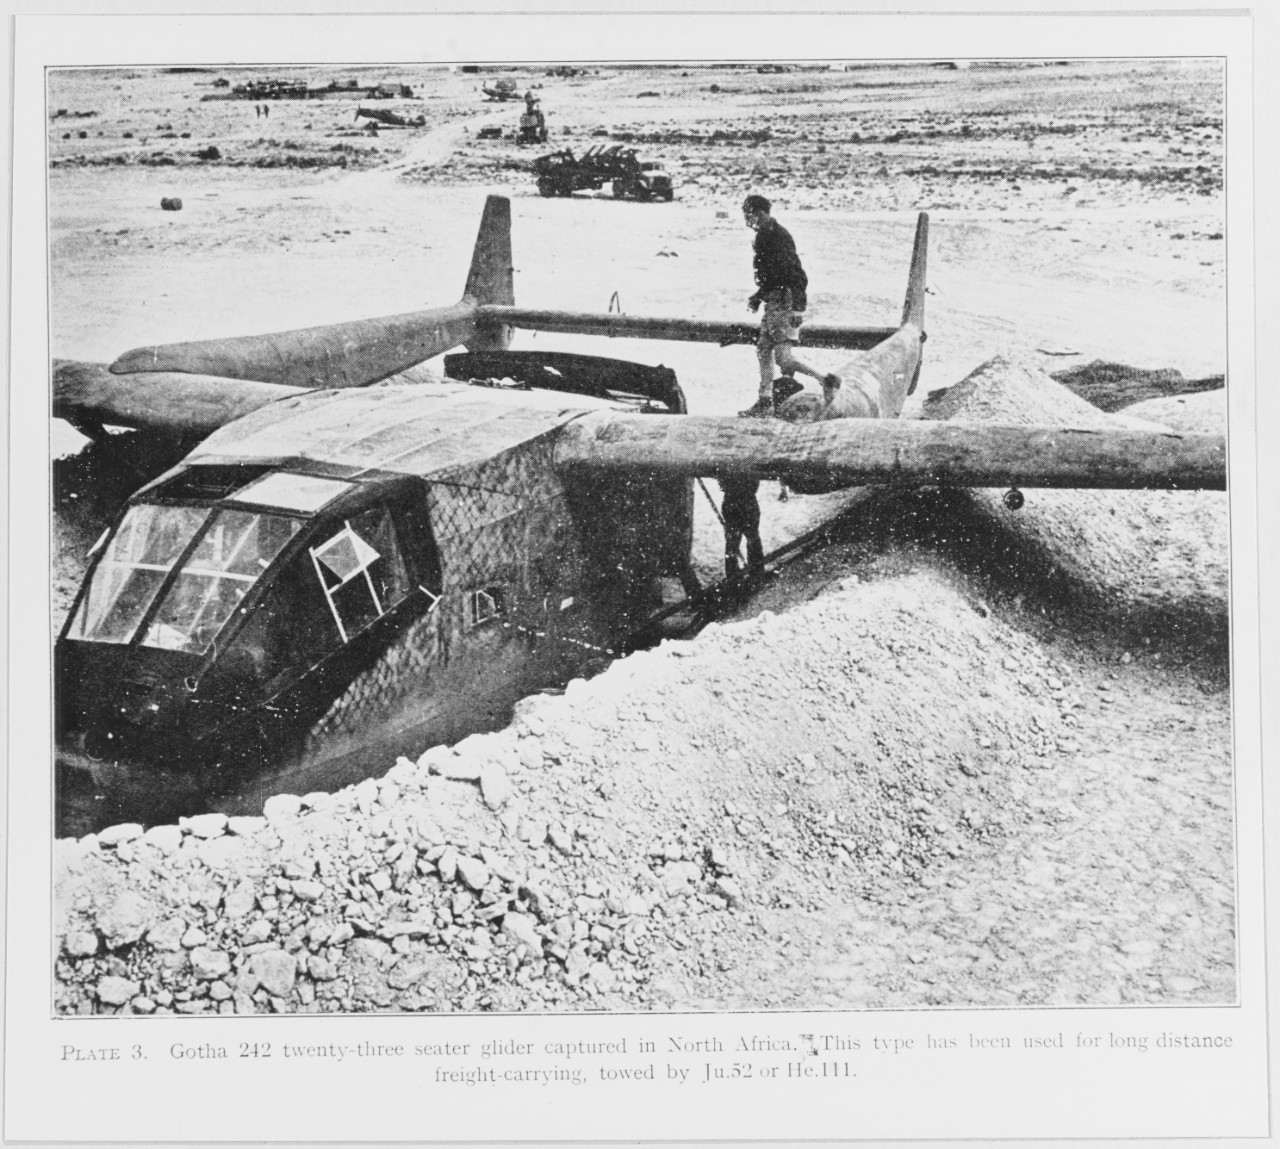 Gotha 242 twenty-three seater glider captured in North Africa